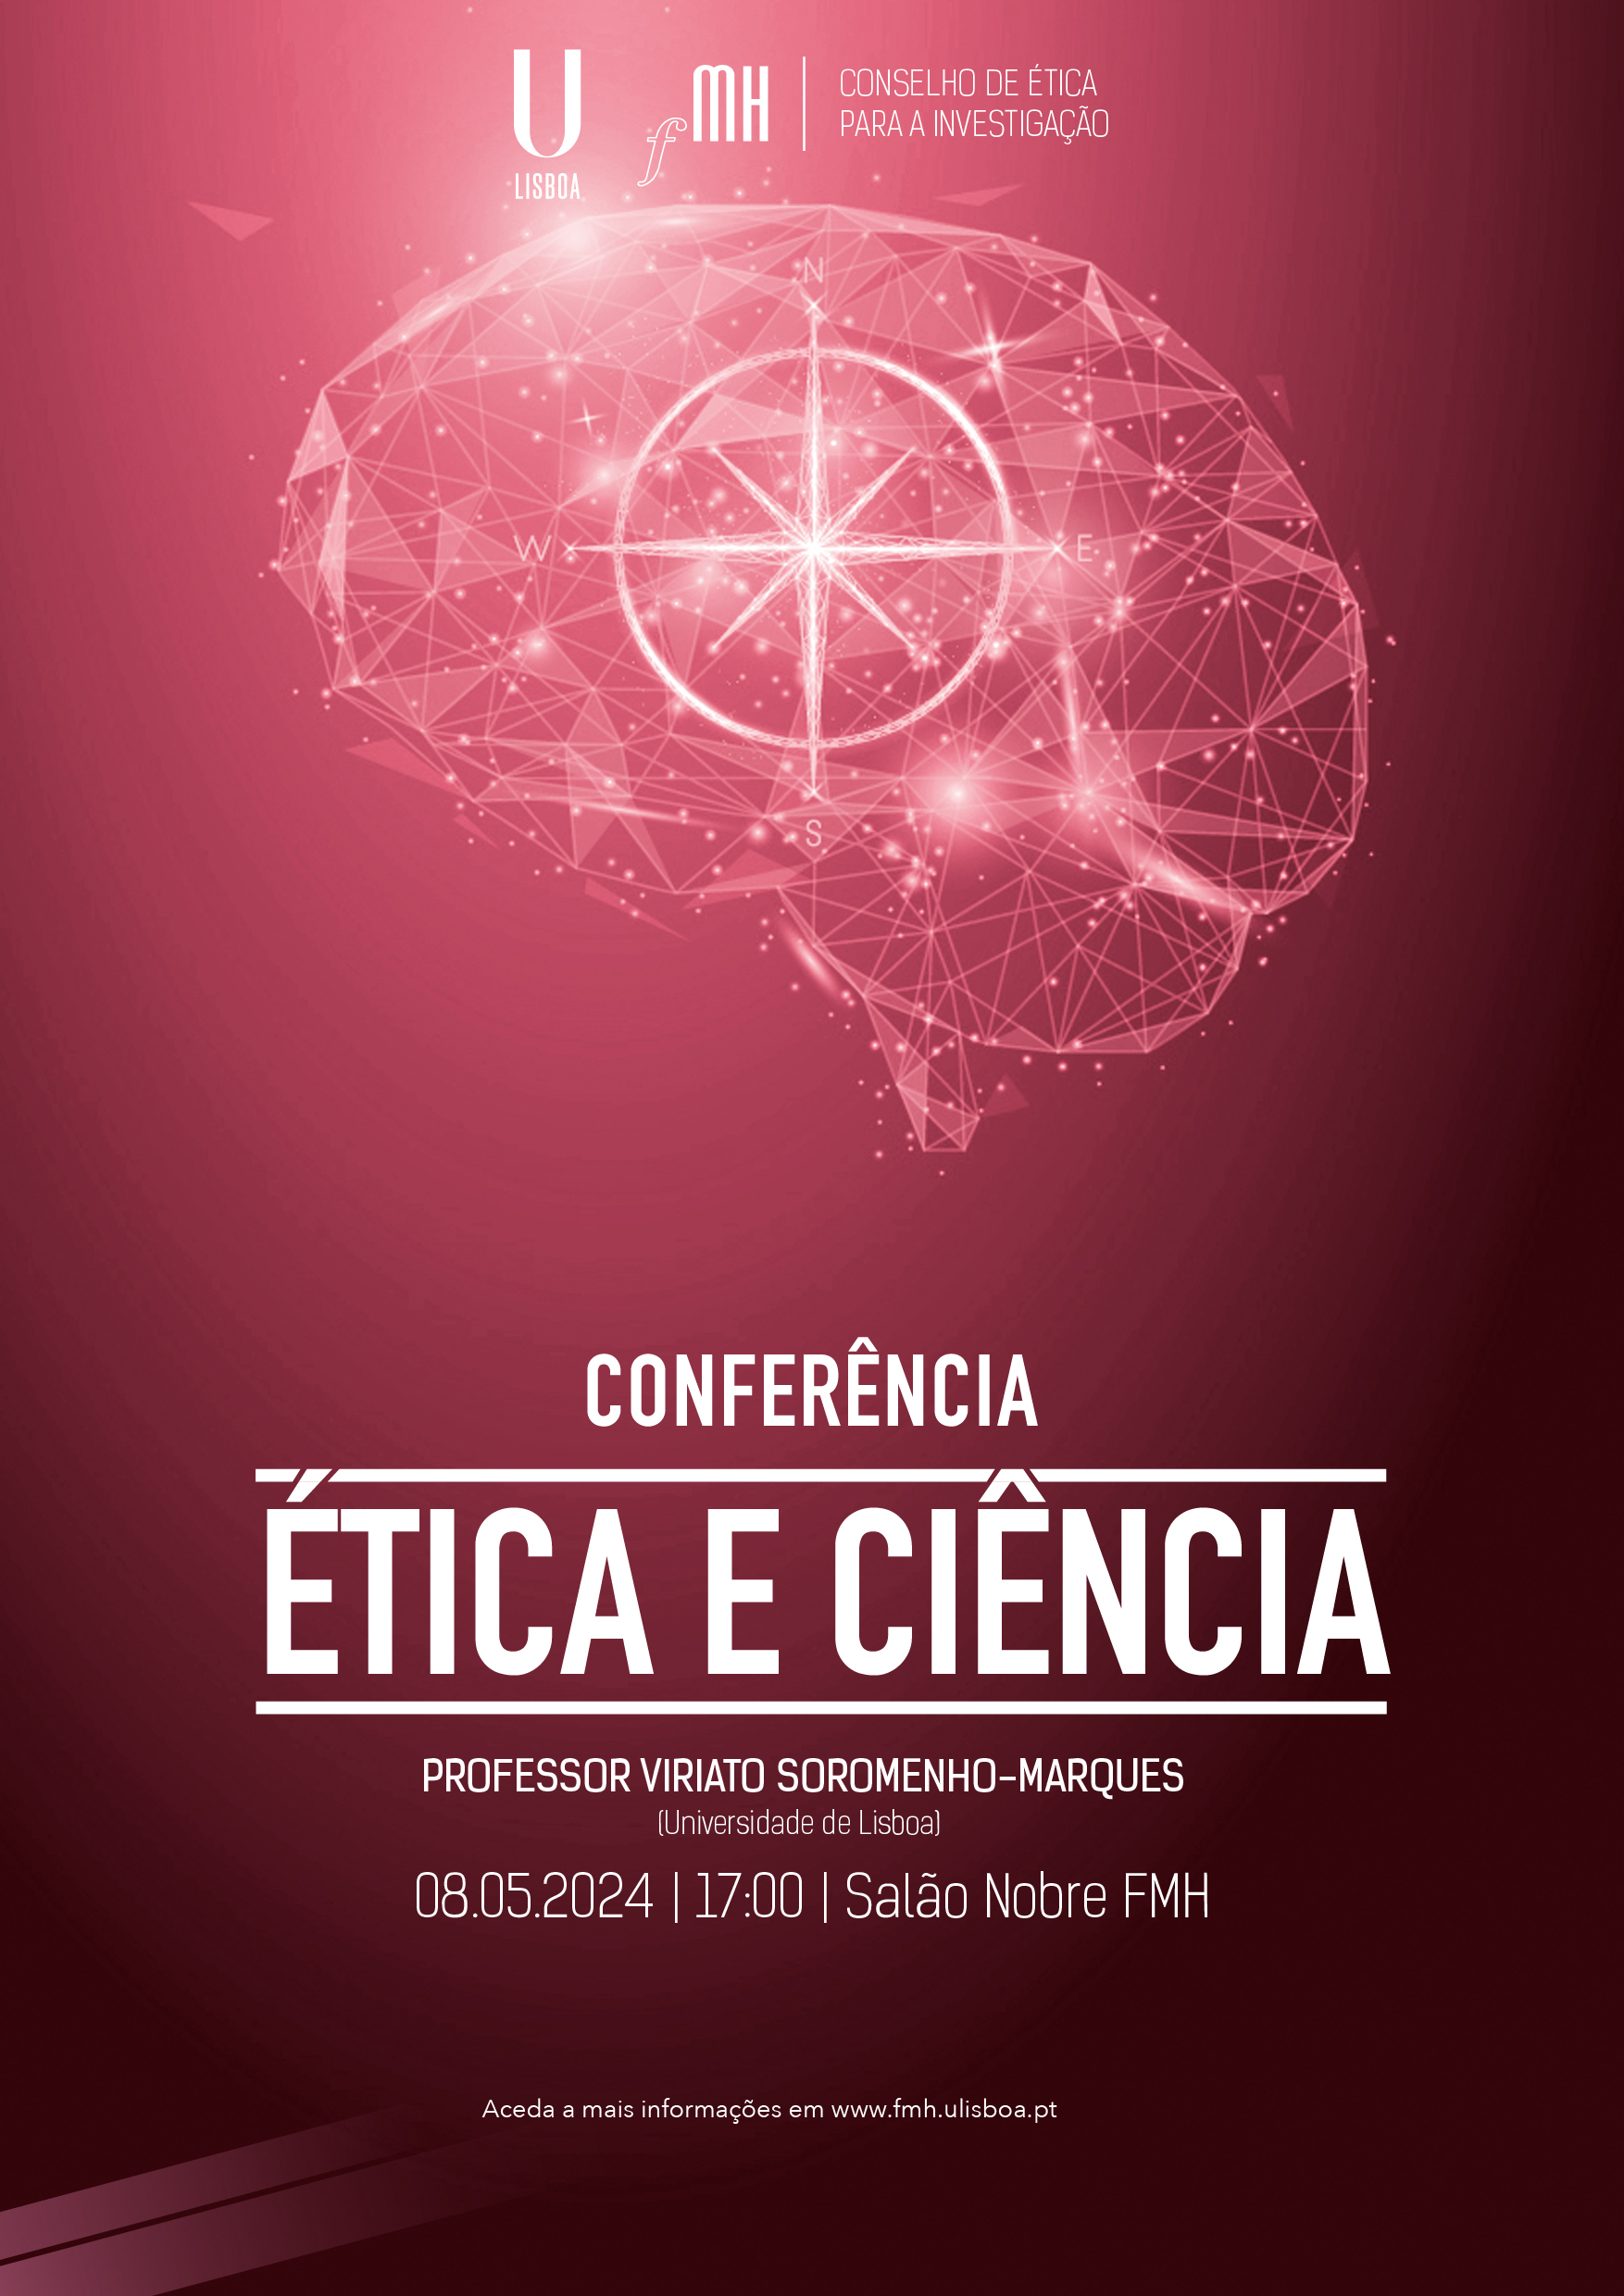 Conferência - “Ética e Ciência